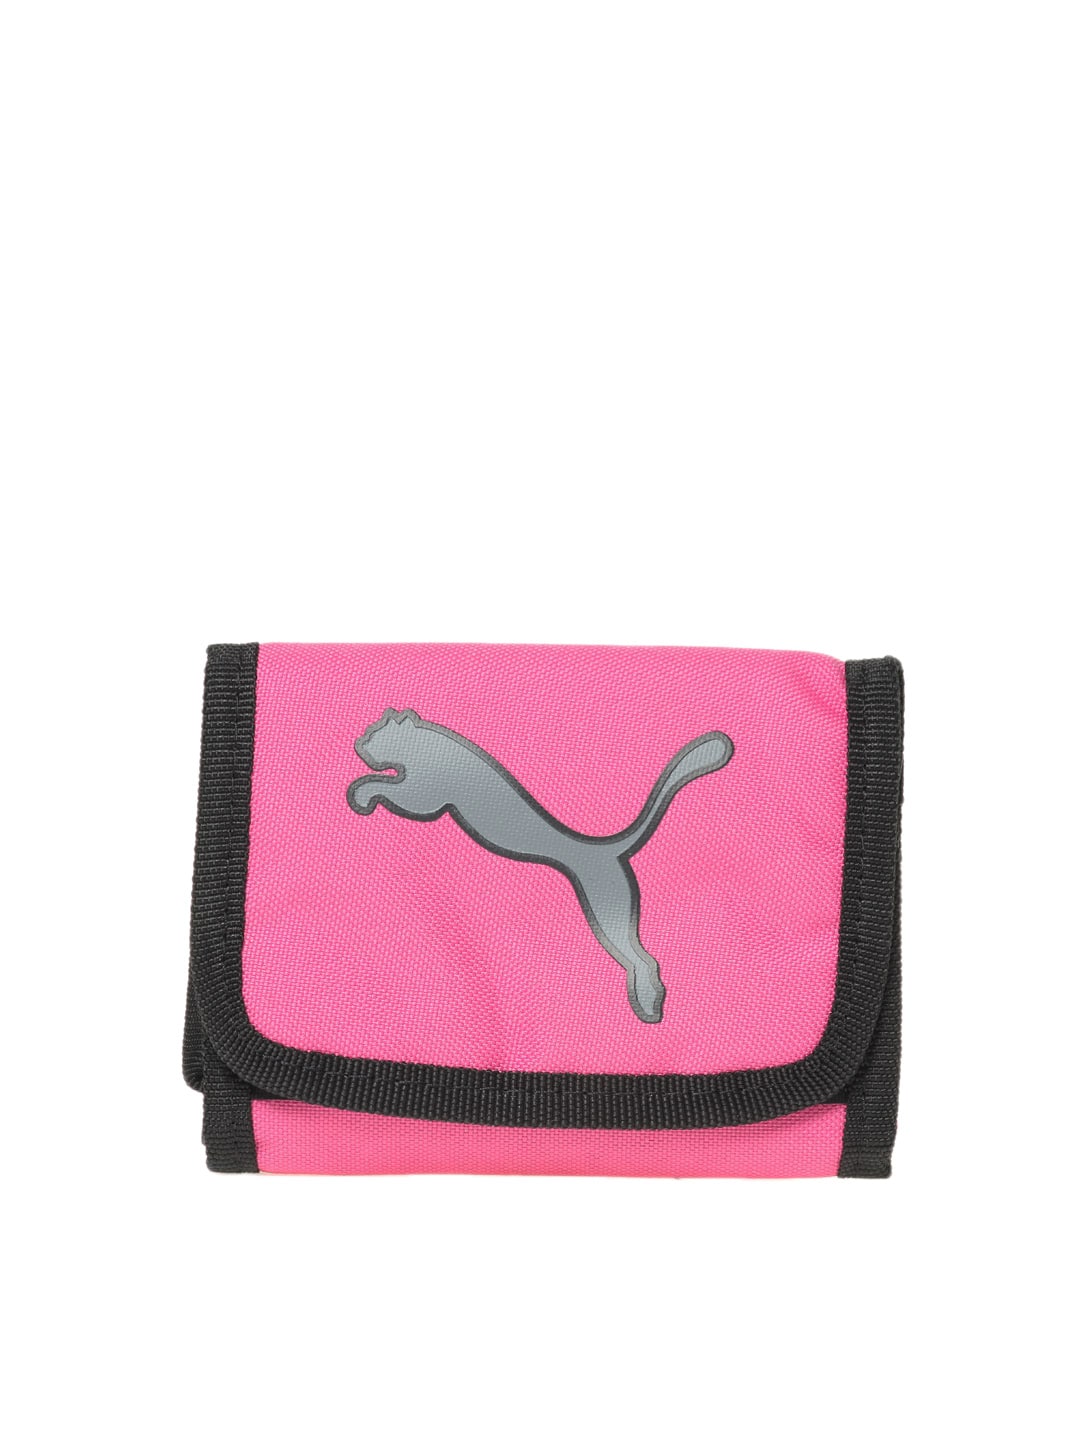 Puma Woman Pink Big Cat Wallet